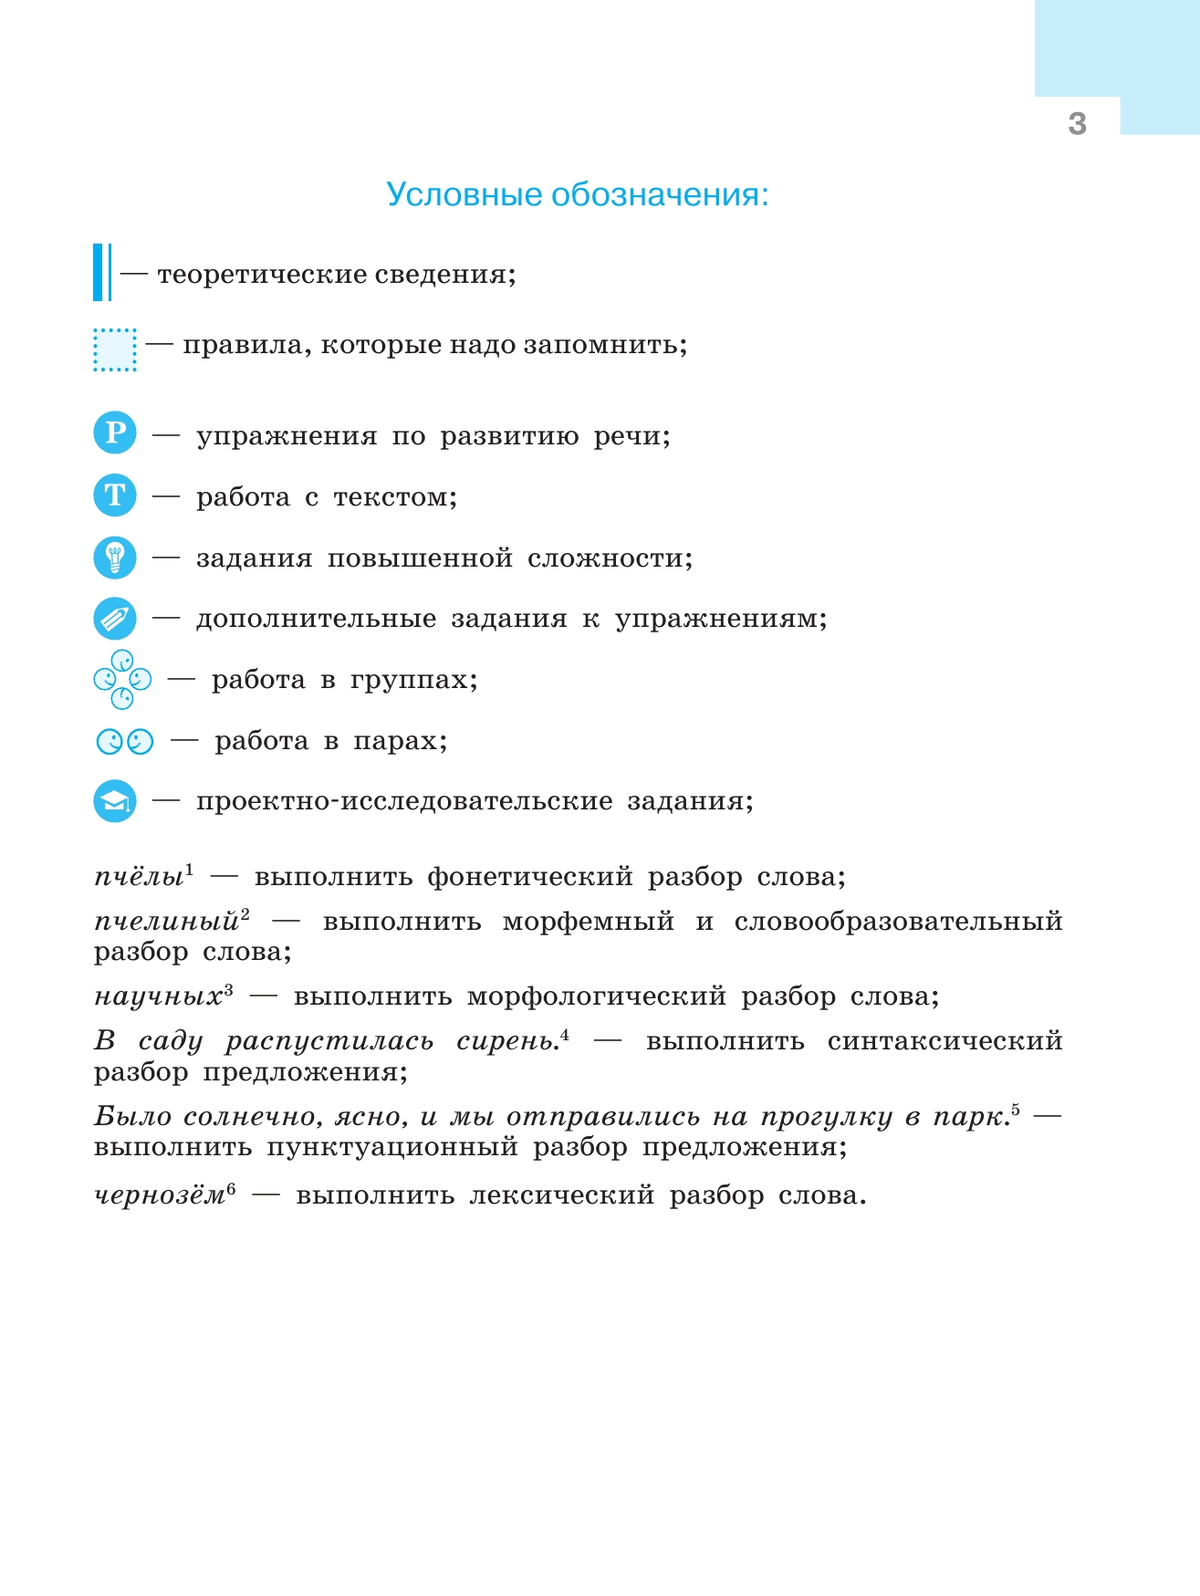 Русский язык. 9 класс. Учебник 11